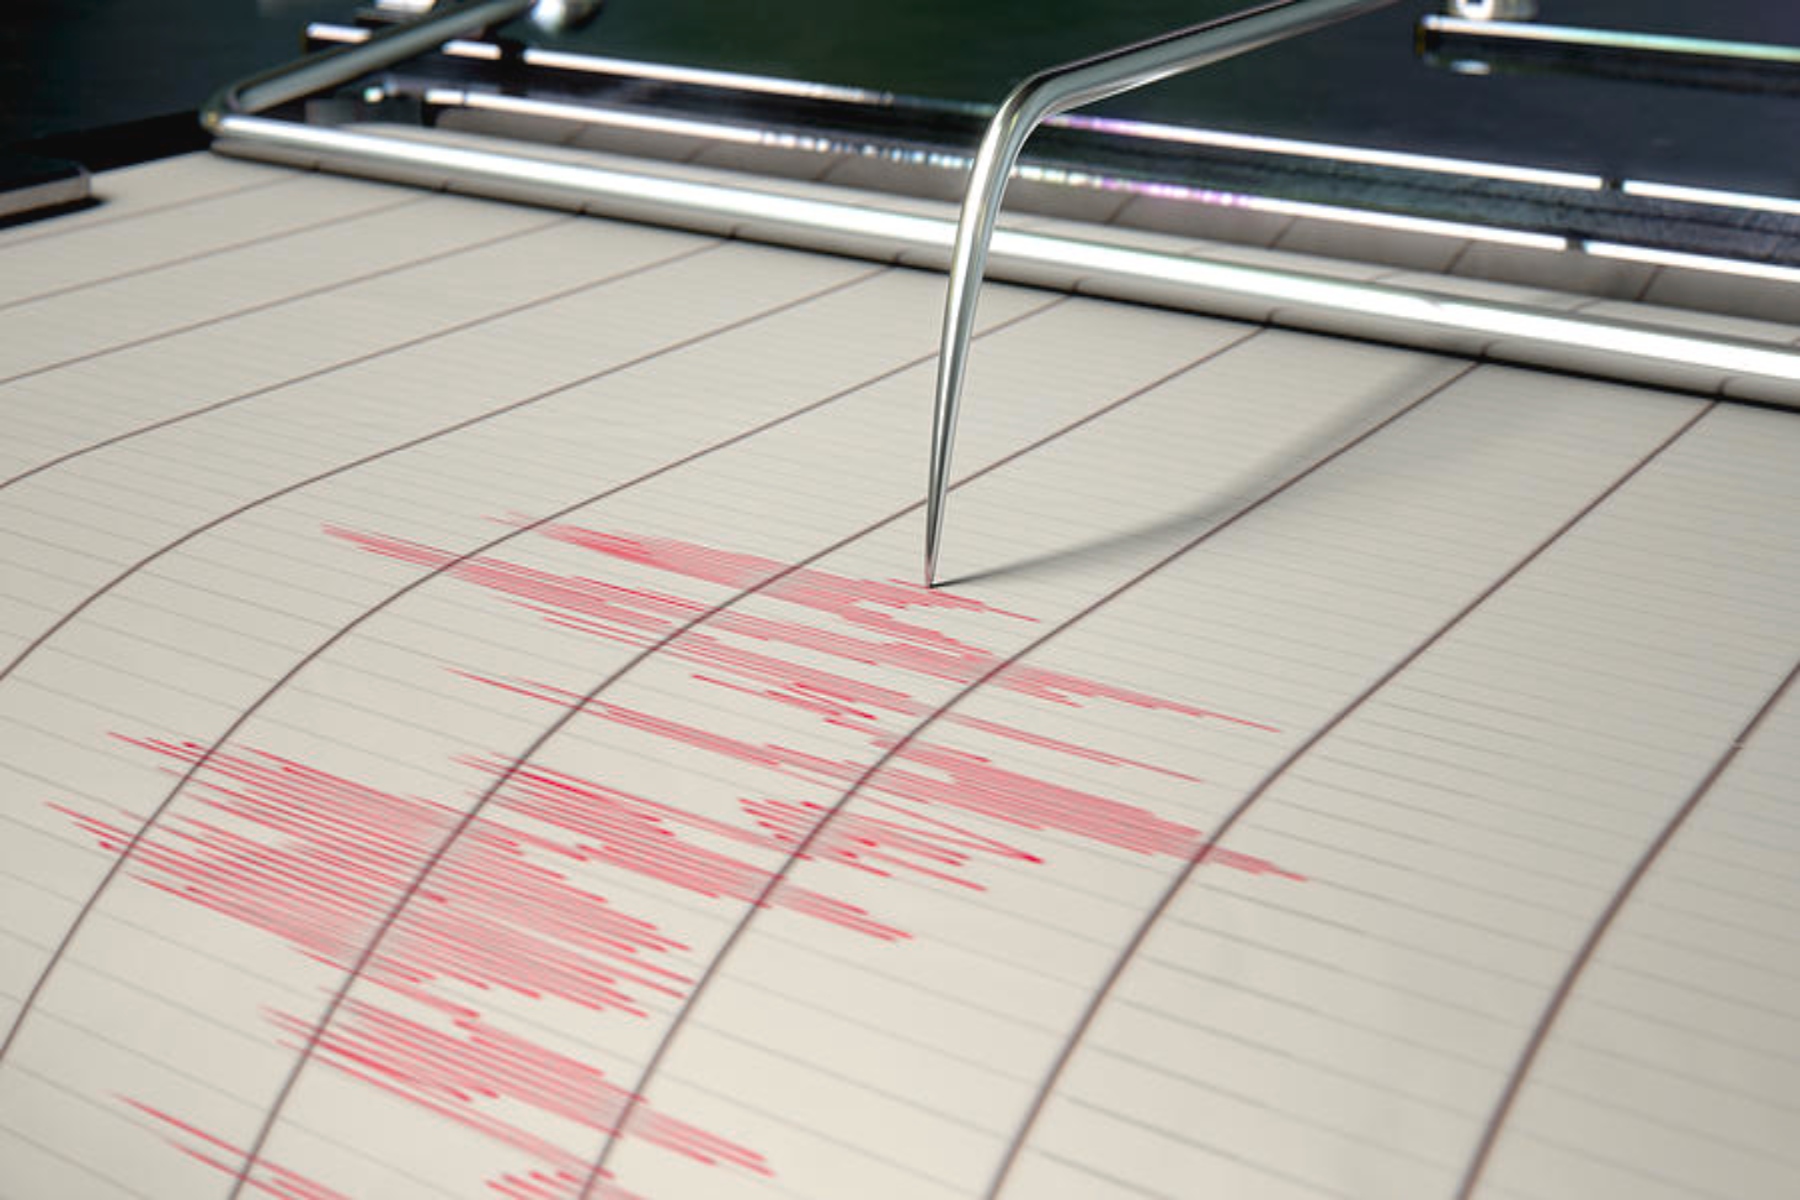 Σεισμός τώρα Πρέβεζα: Σεισμική δόνηση έντασης 4,3 ρίχτερ σημειώθηκε στην Πρέβεζα